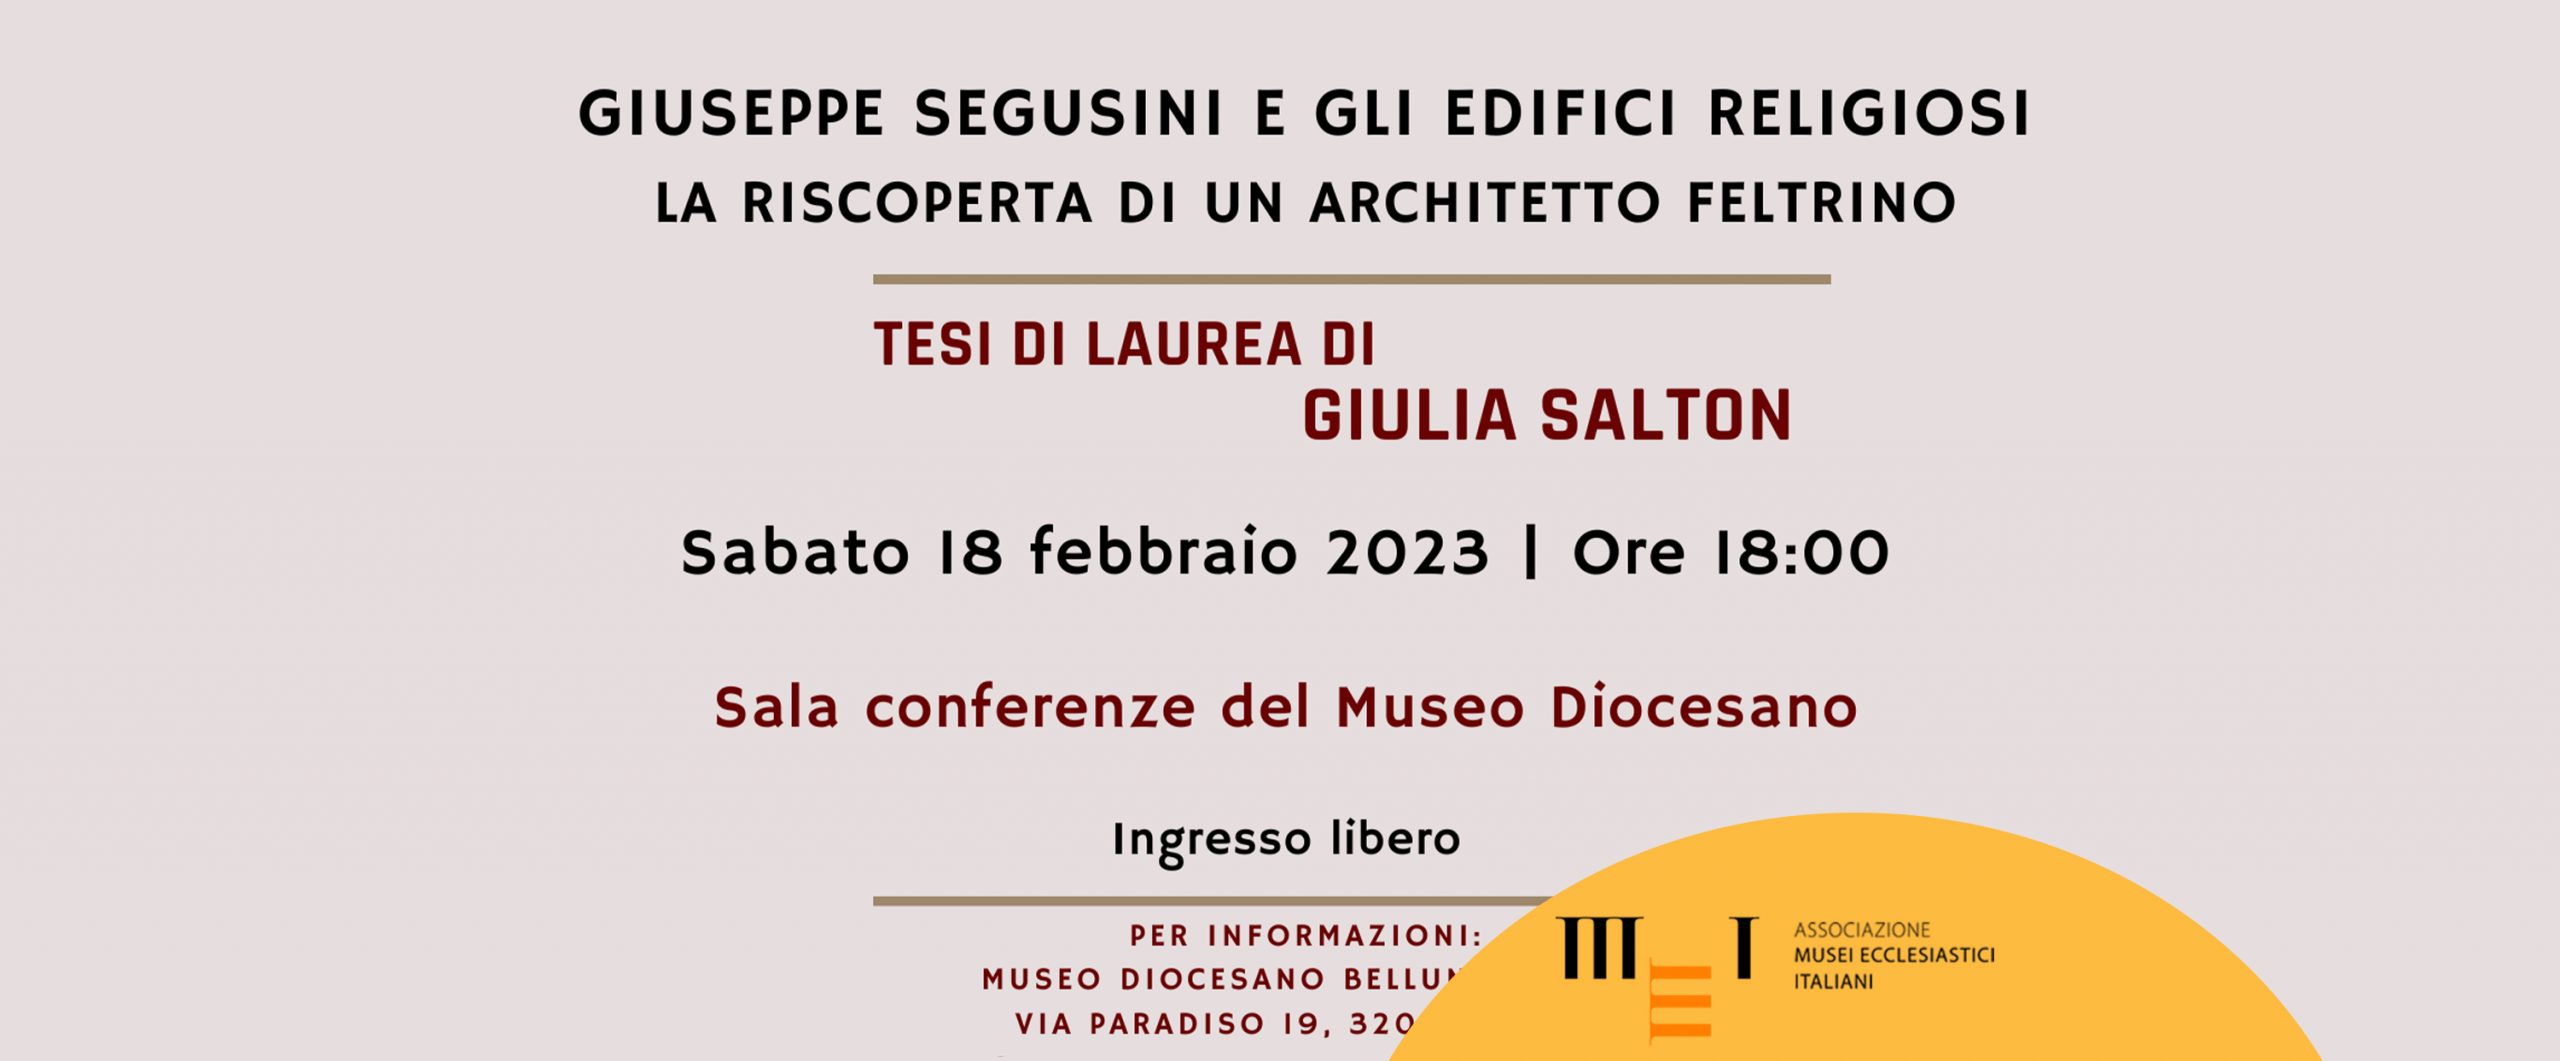 Giuseppe Segusini e gli edifici religiosi, 18 febbraio 2023 al Museo Diocesano di Belluno Feltre